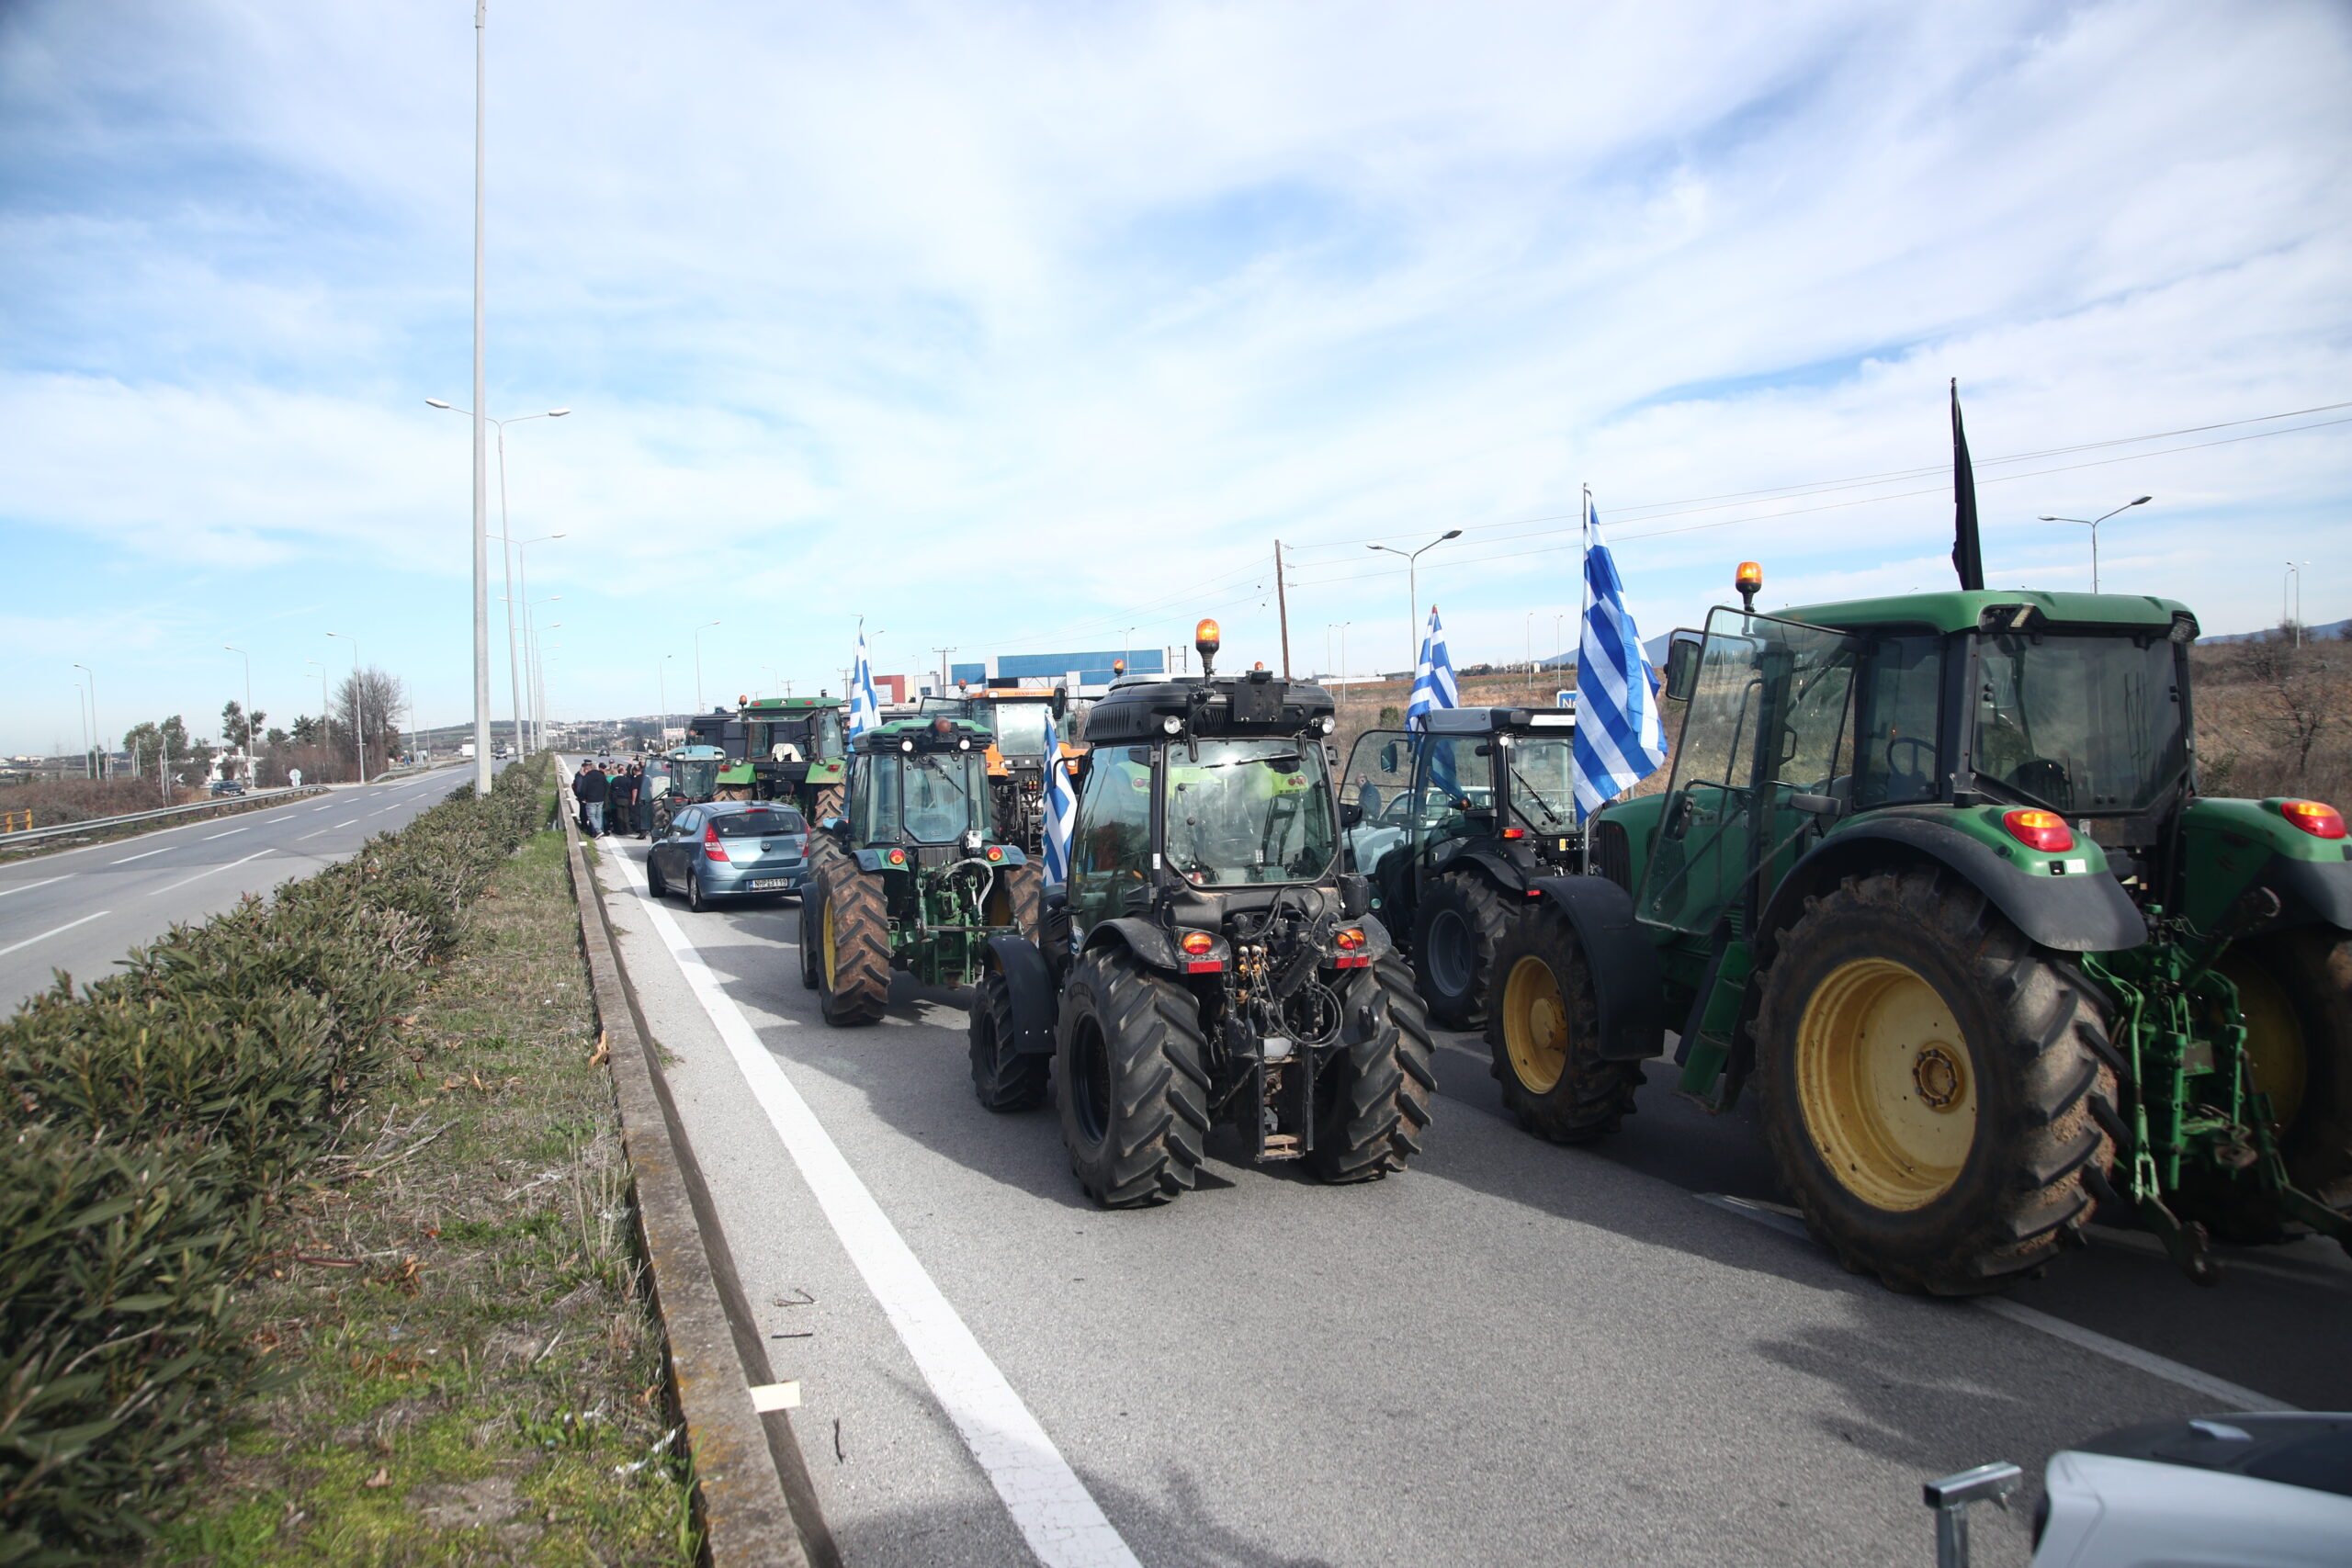 Λ. Αυγενάκης σε αγρότες: Να συγκροτήσουν μια 20μελή αντιπροσωπεία και να προσέλθουν σε διάλογο έχοντας ανοιχτούς τους δρόμους